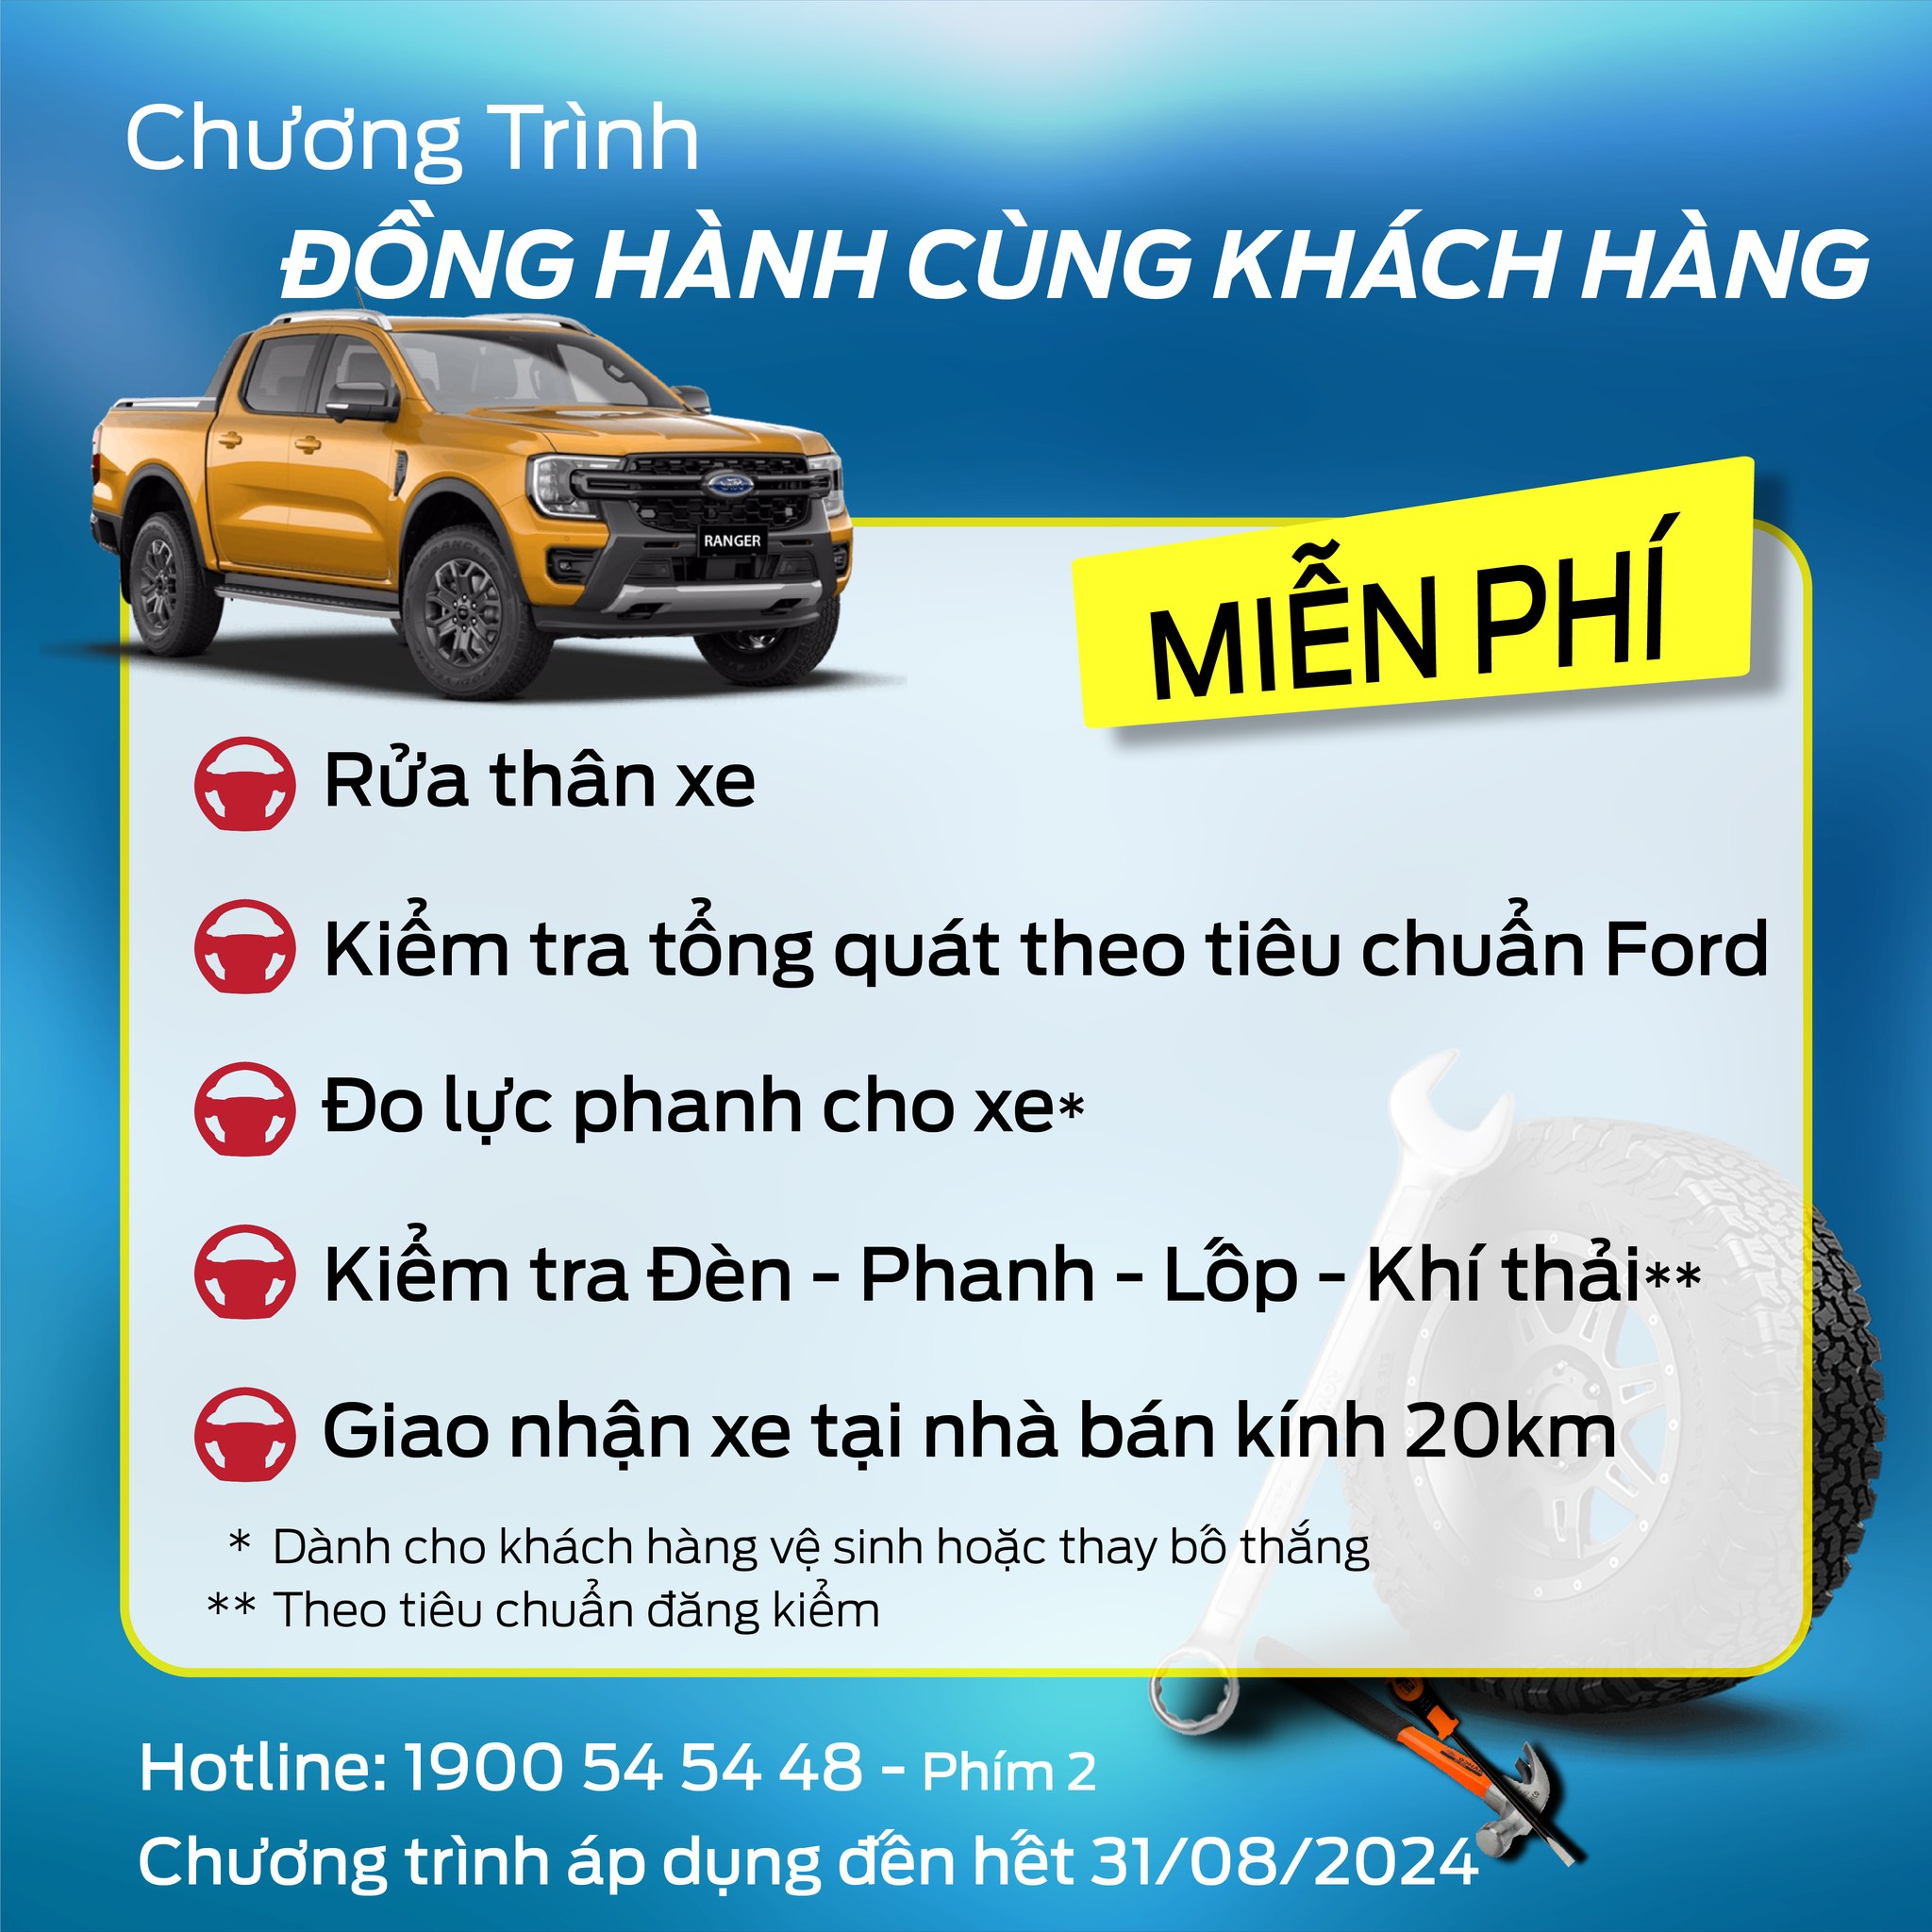 Bình Thuận Ford Đồng hành cùng khách hàng